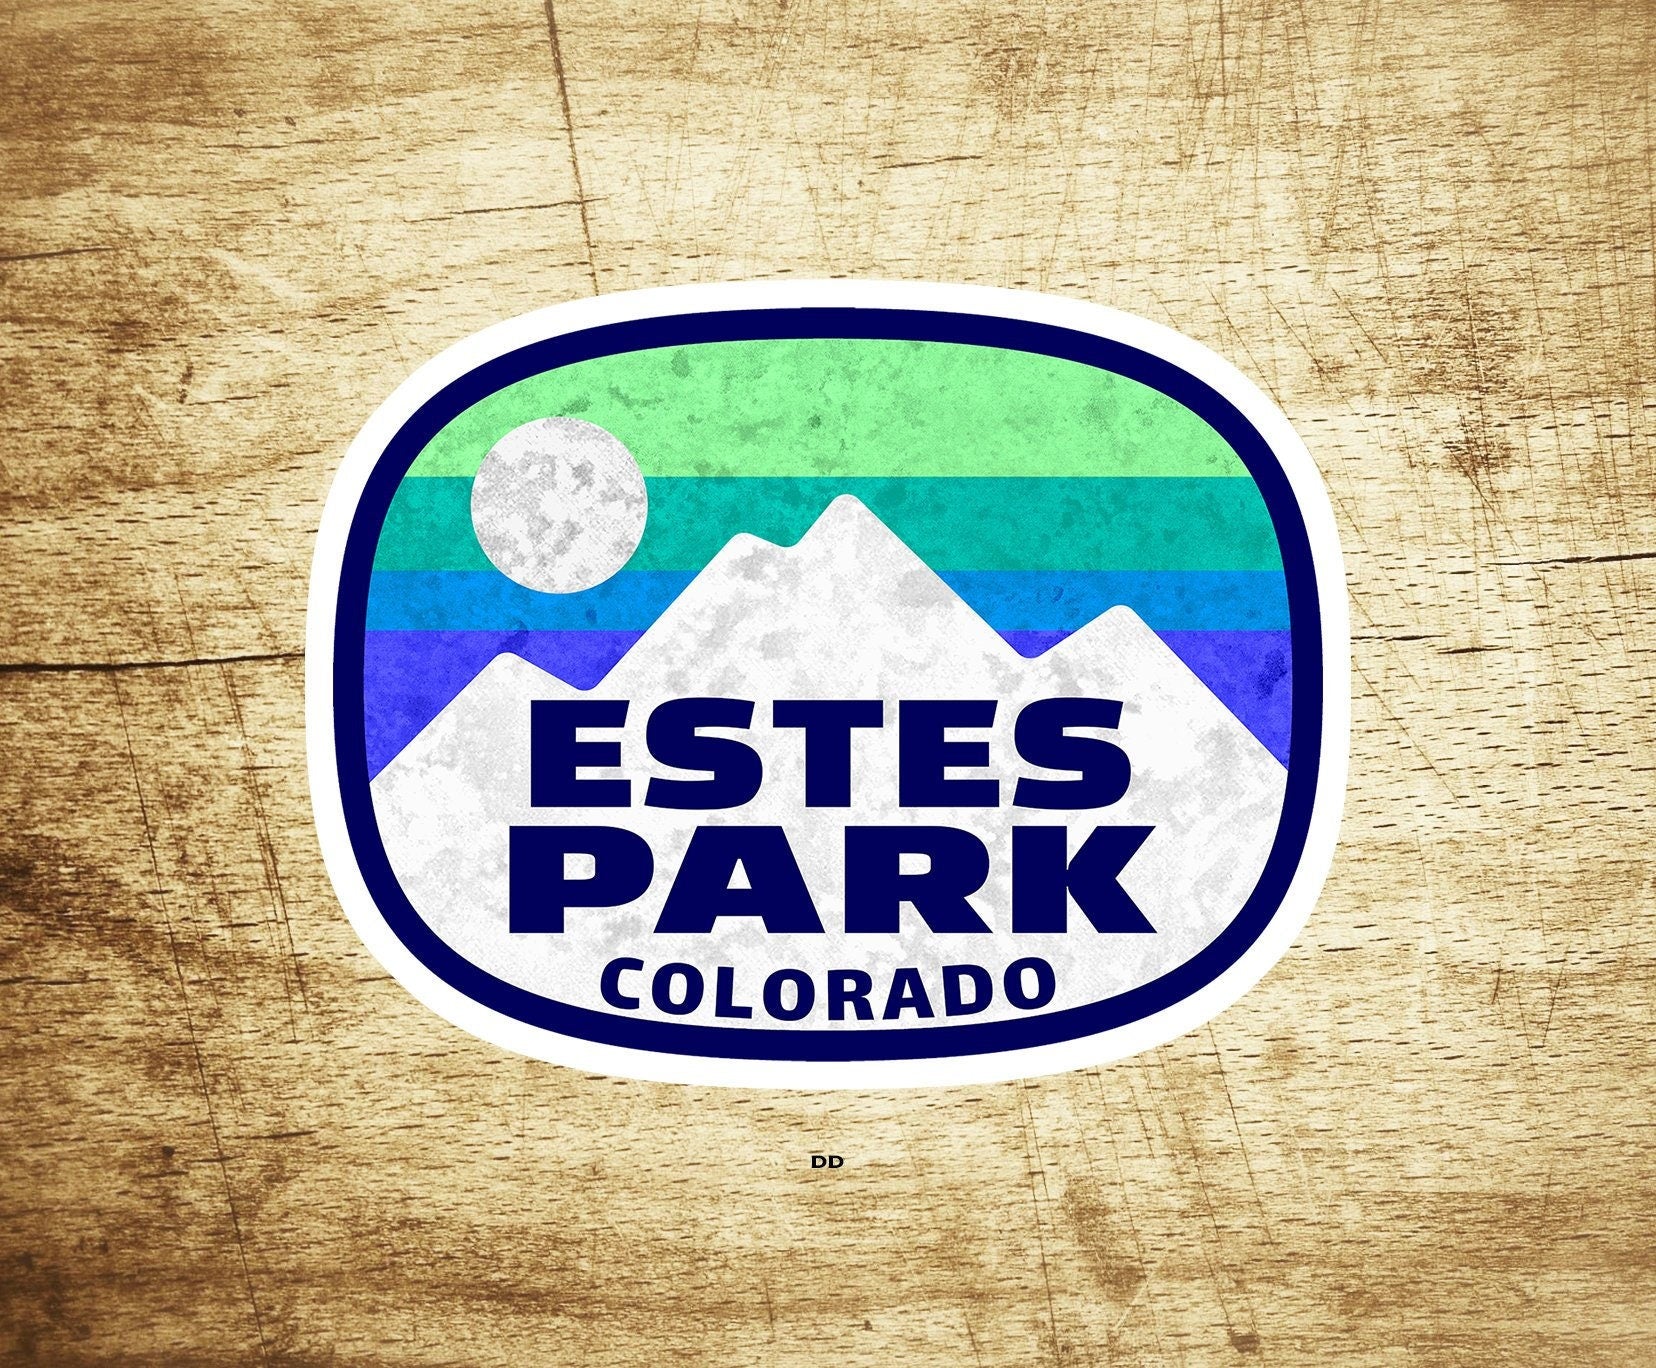 Estes Park Rocky Mountain National Park 3.75" X 2.75" Sticker Decal Colorado